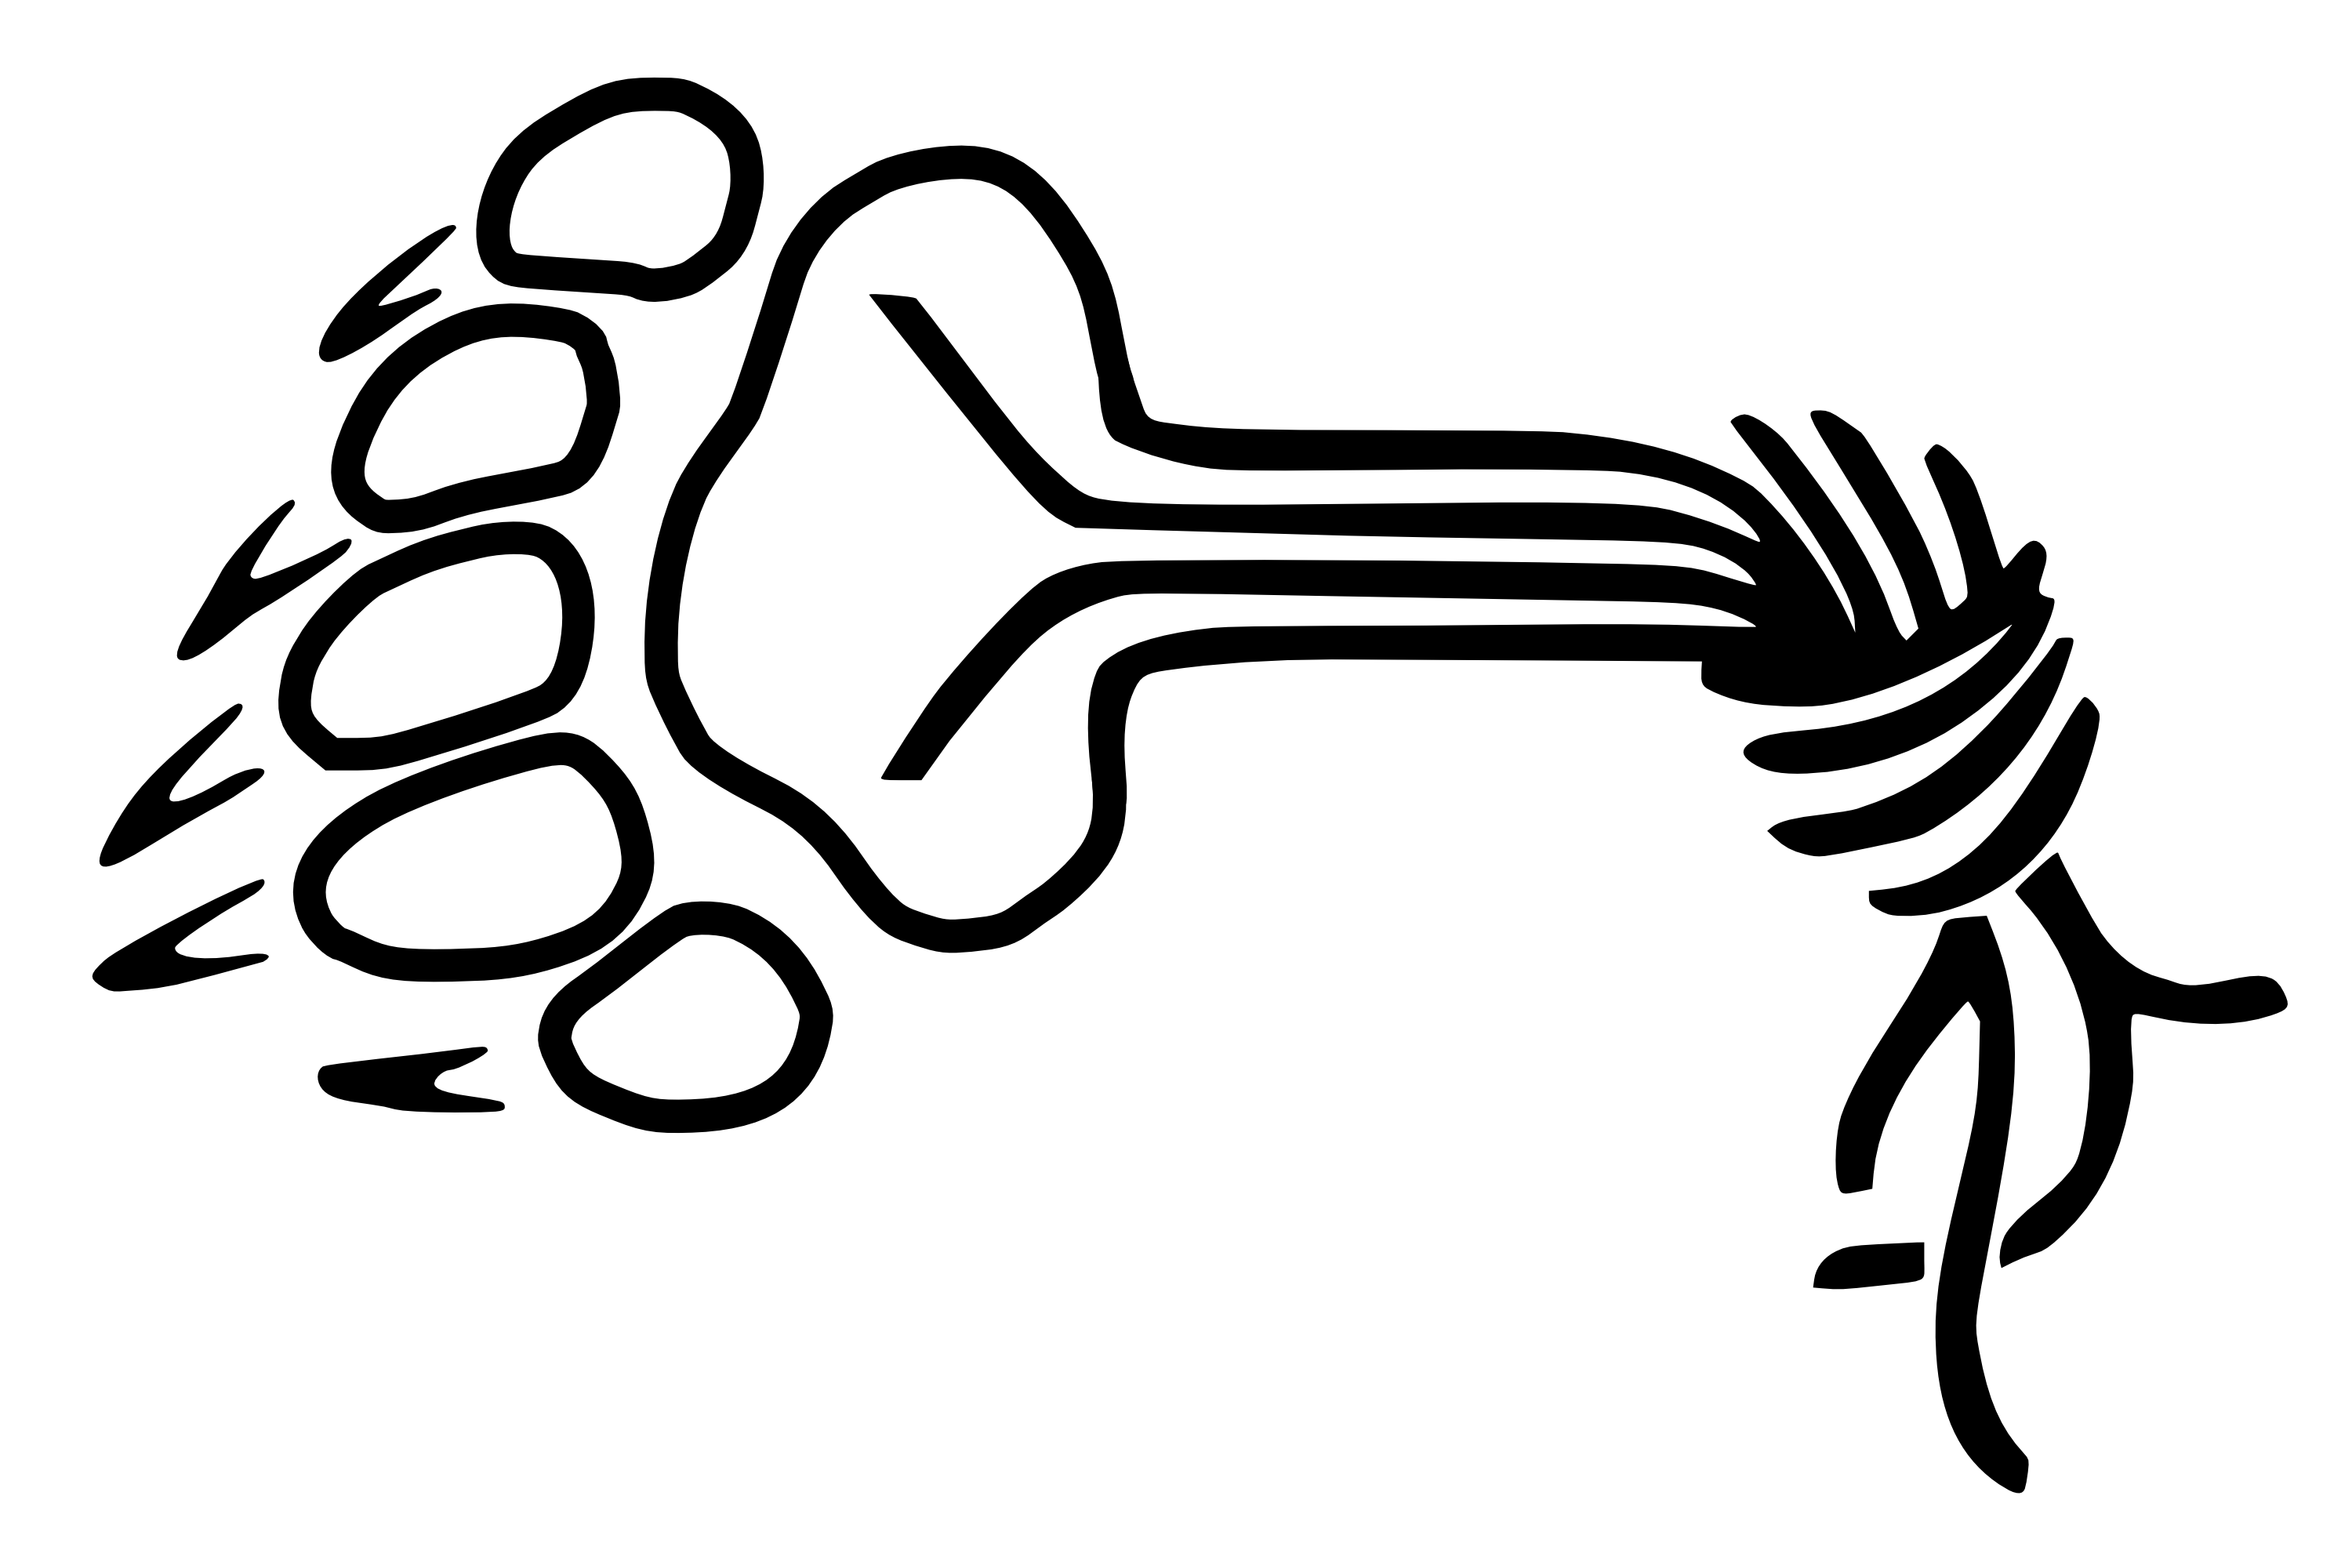 Chaostreffbern-logo.png